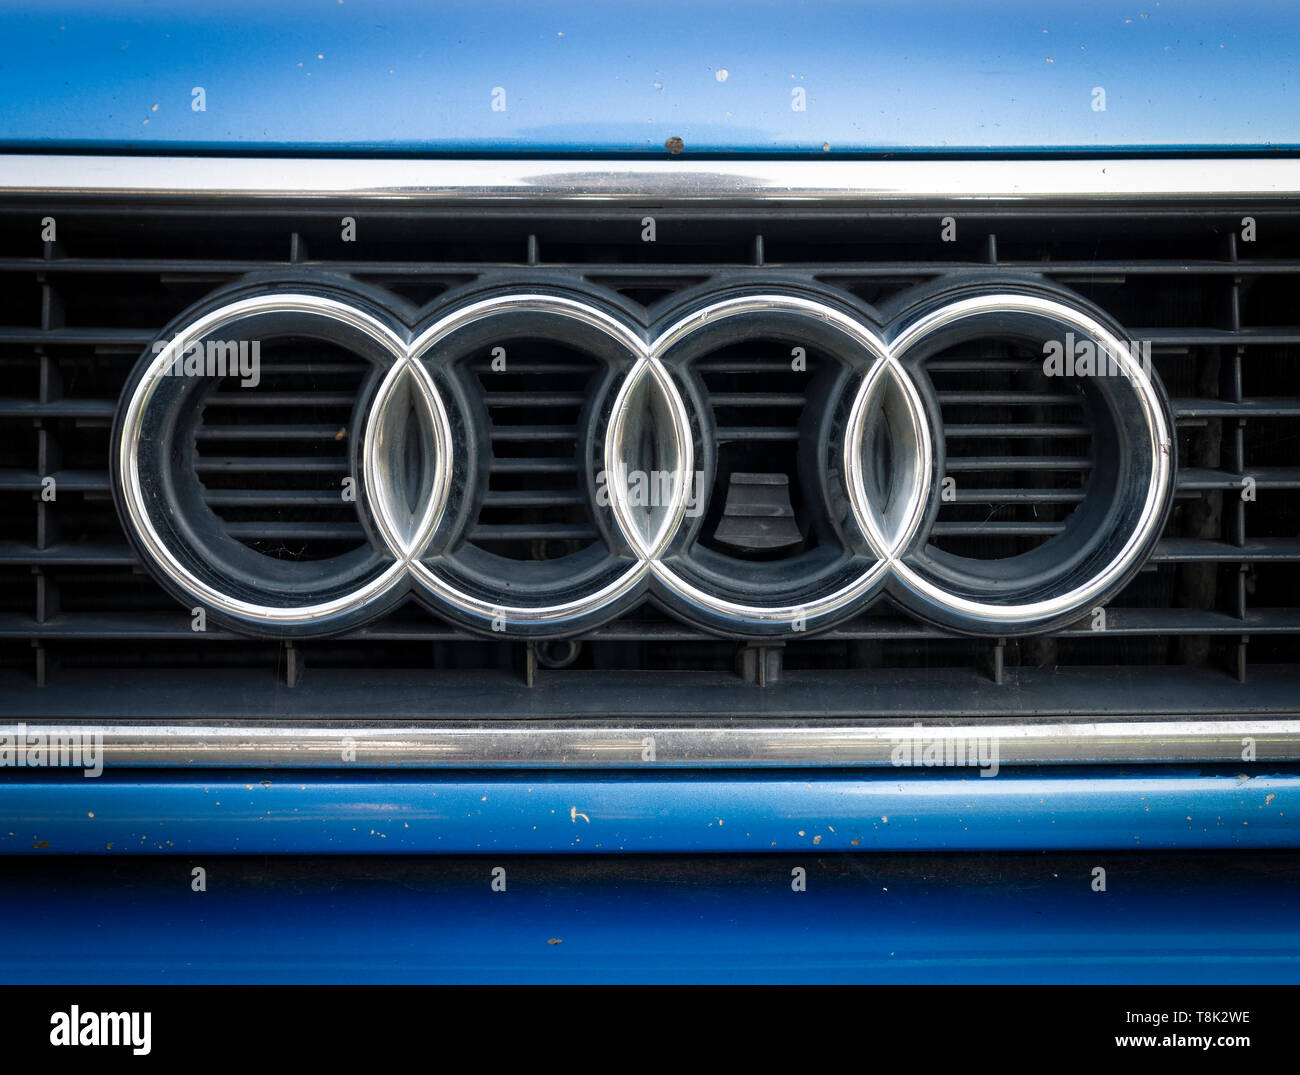 Audi badge Banque de photographies et d'images à haute résolution - Alamy